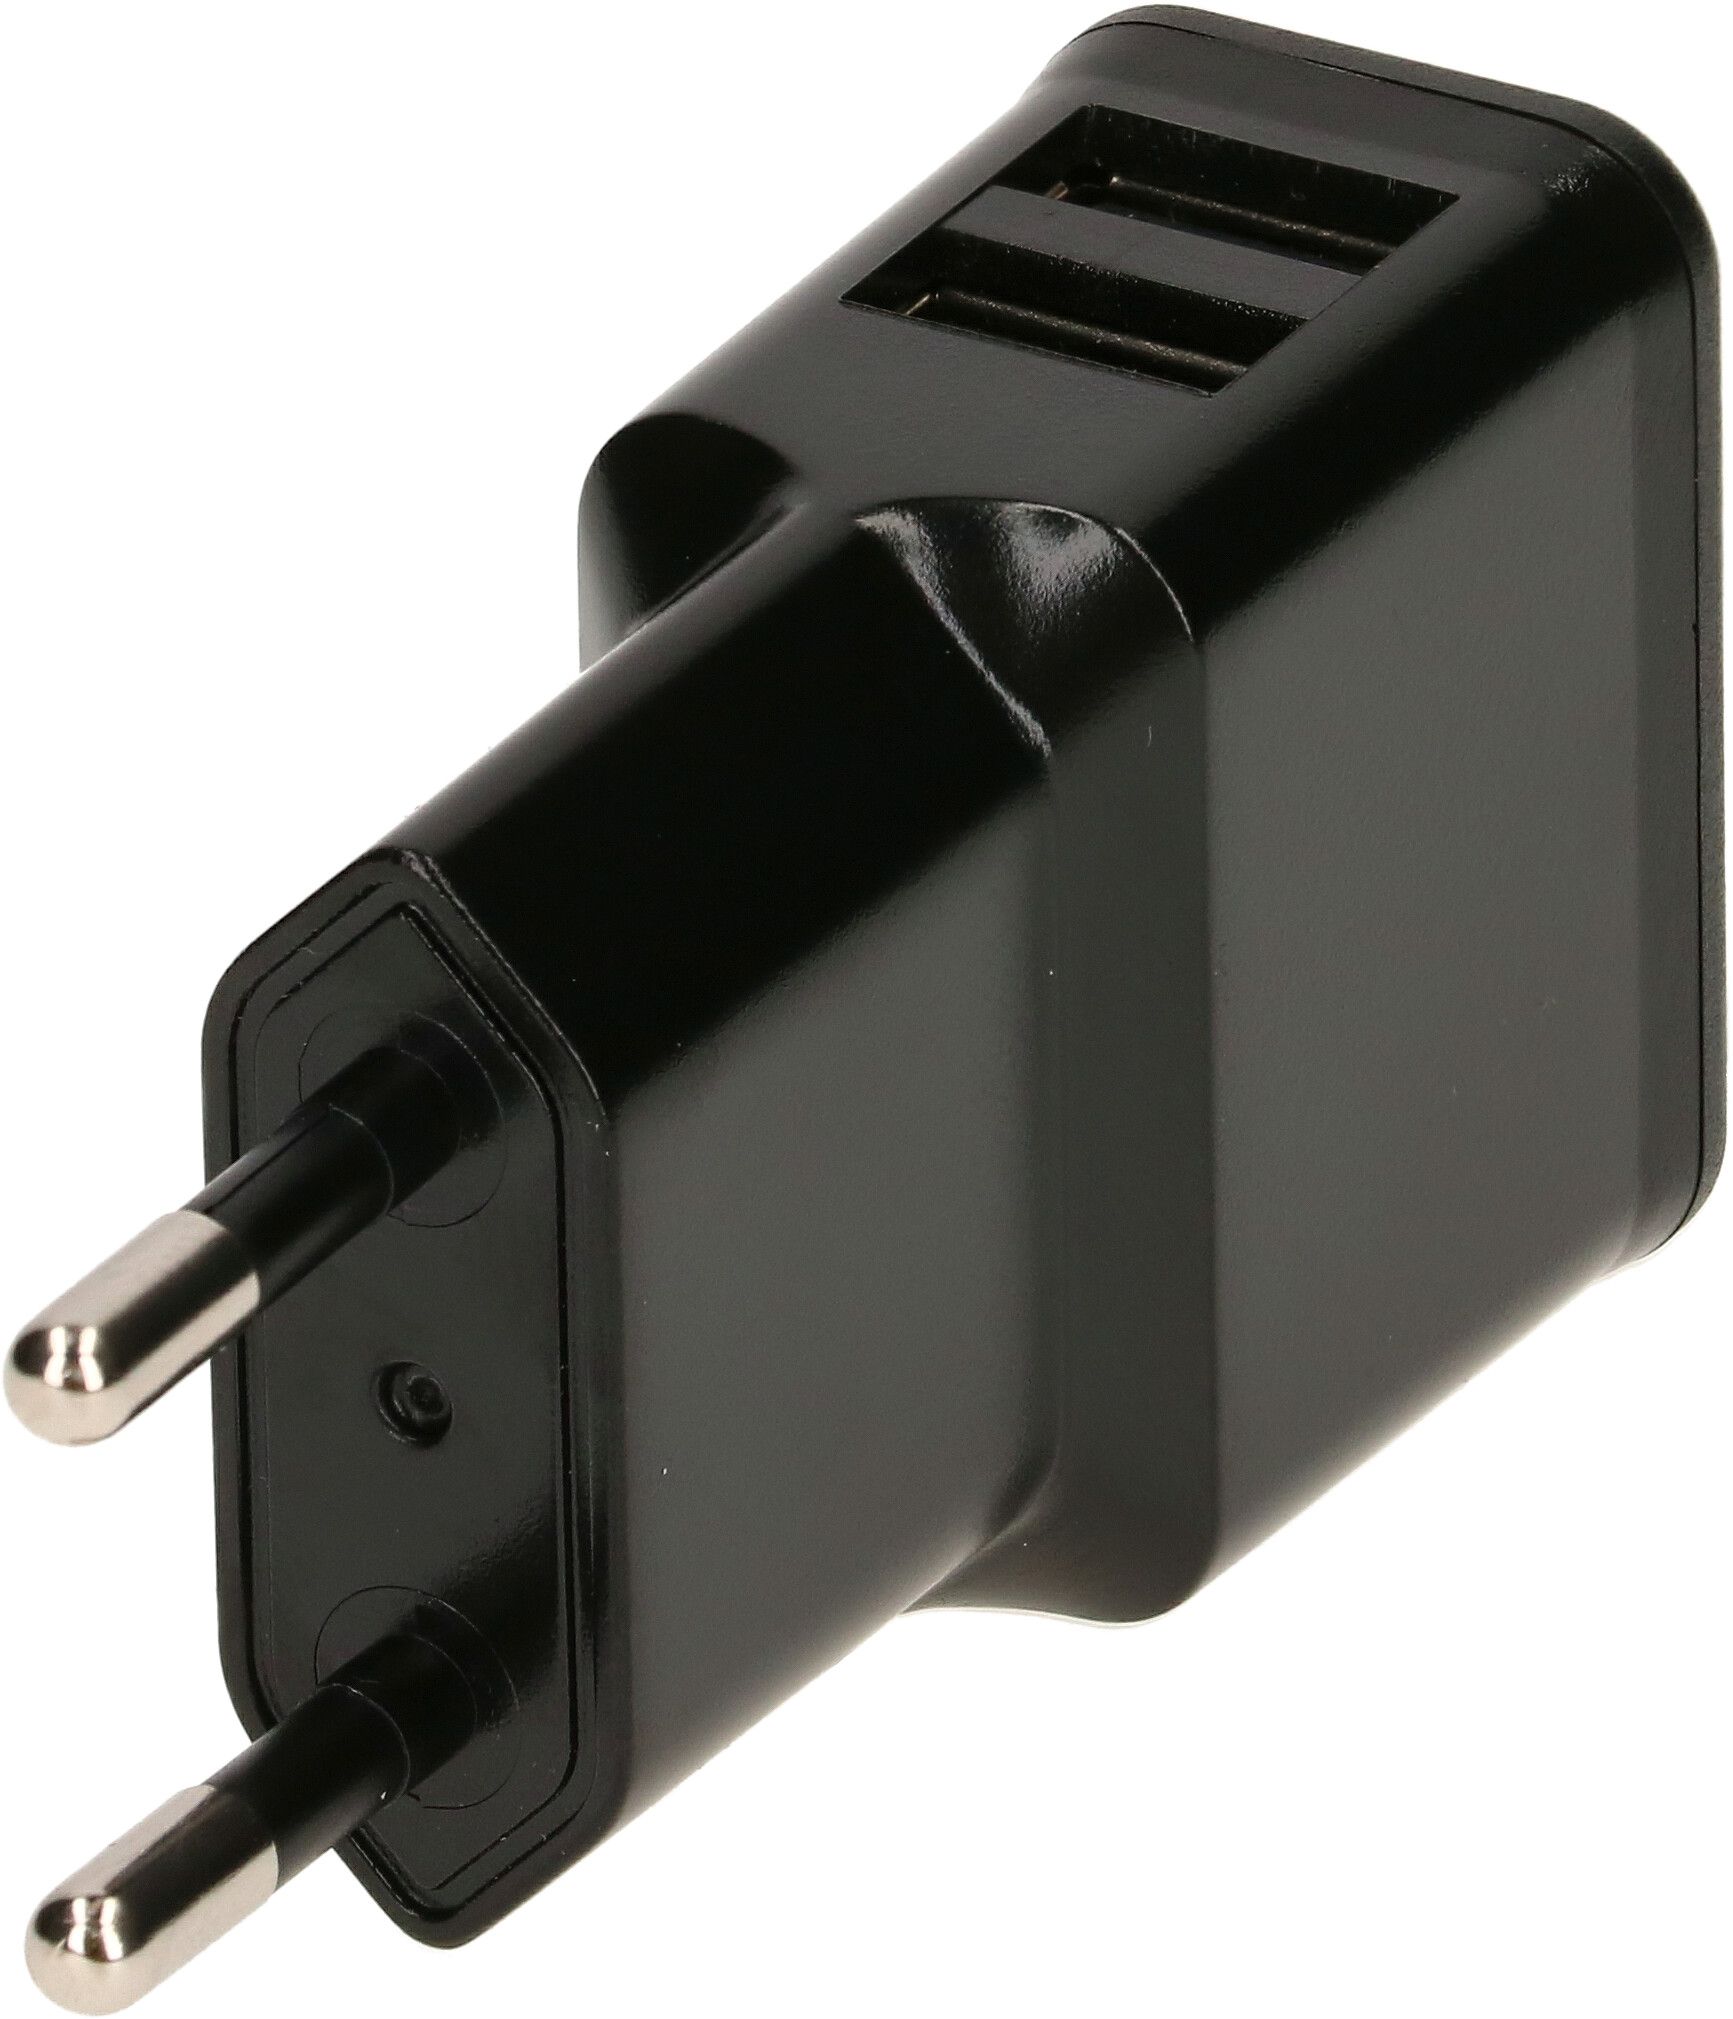 adaptateur de charge USB 2x USB-A 12W noir